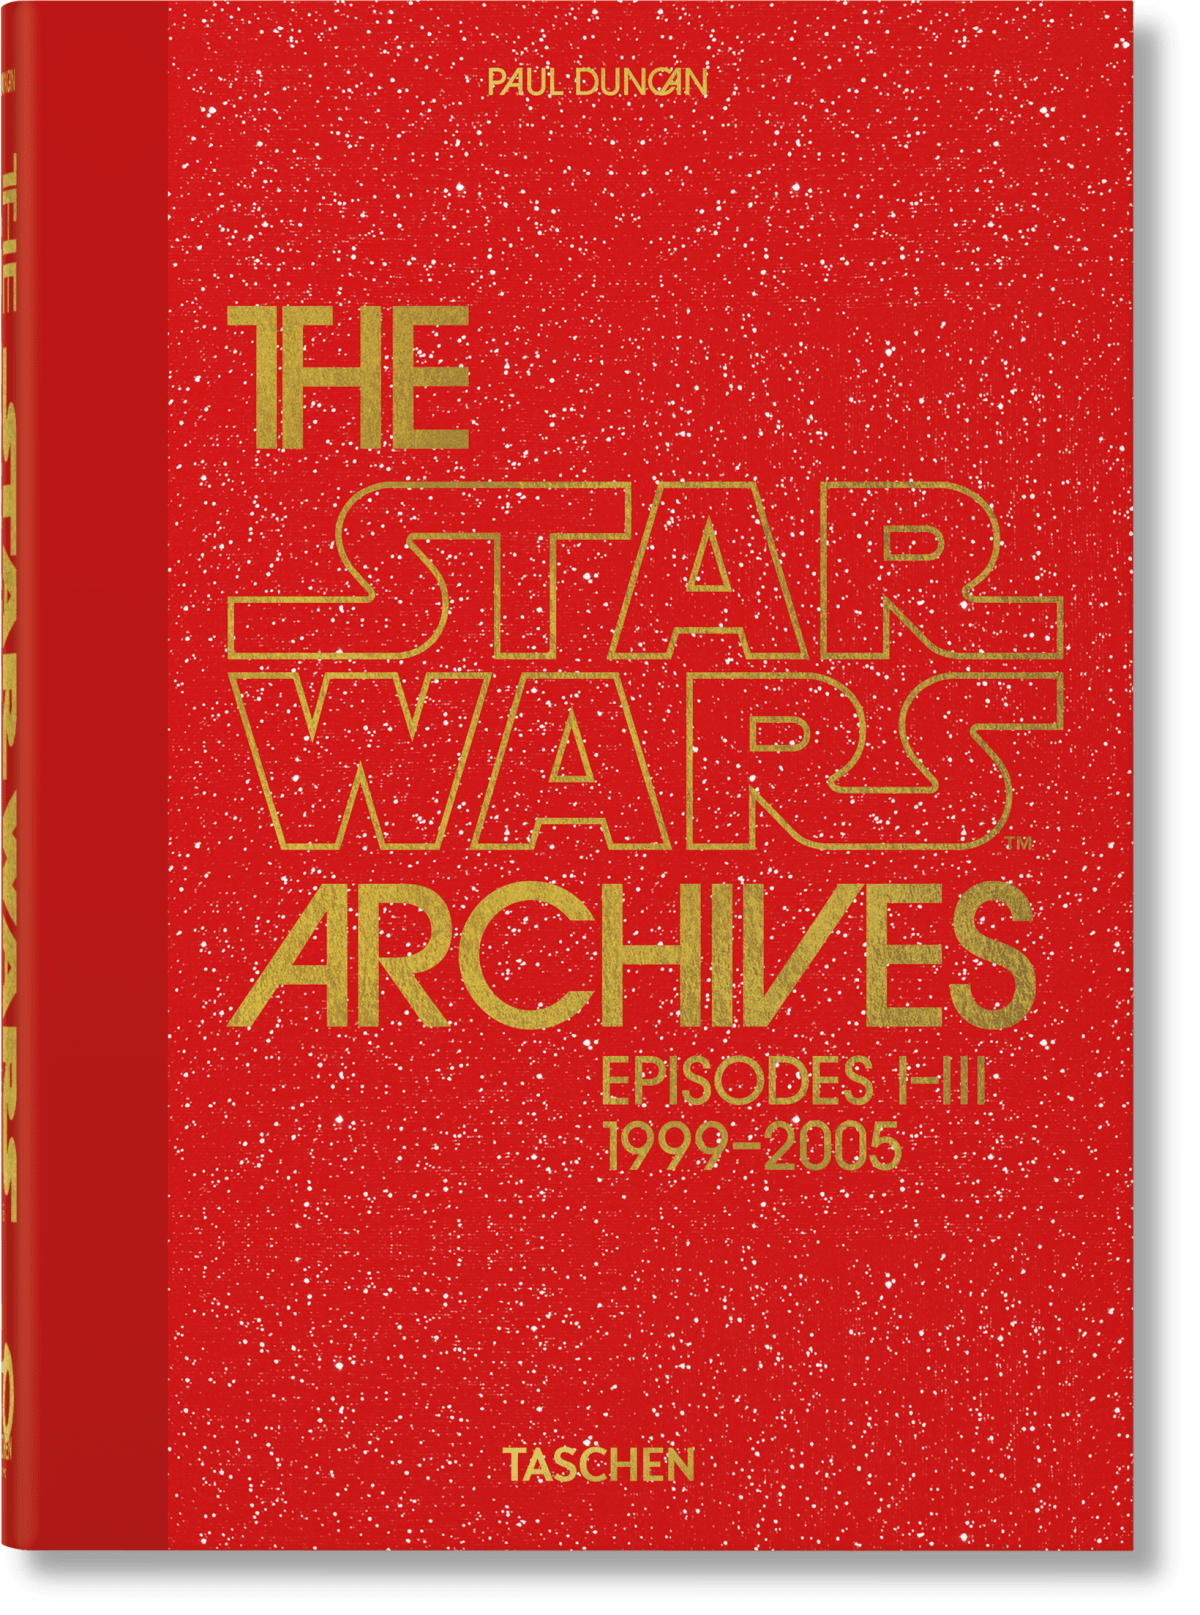 Los Archivos de Star Wars. 1999–2005. 40th Ed.